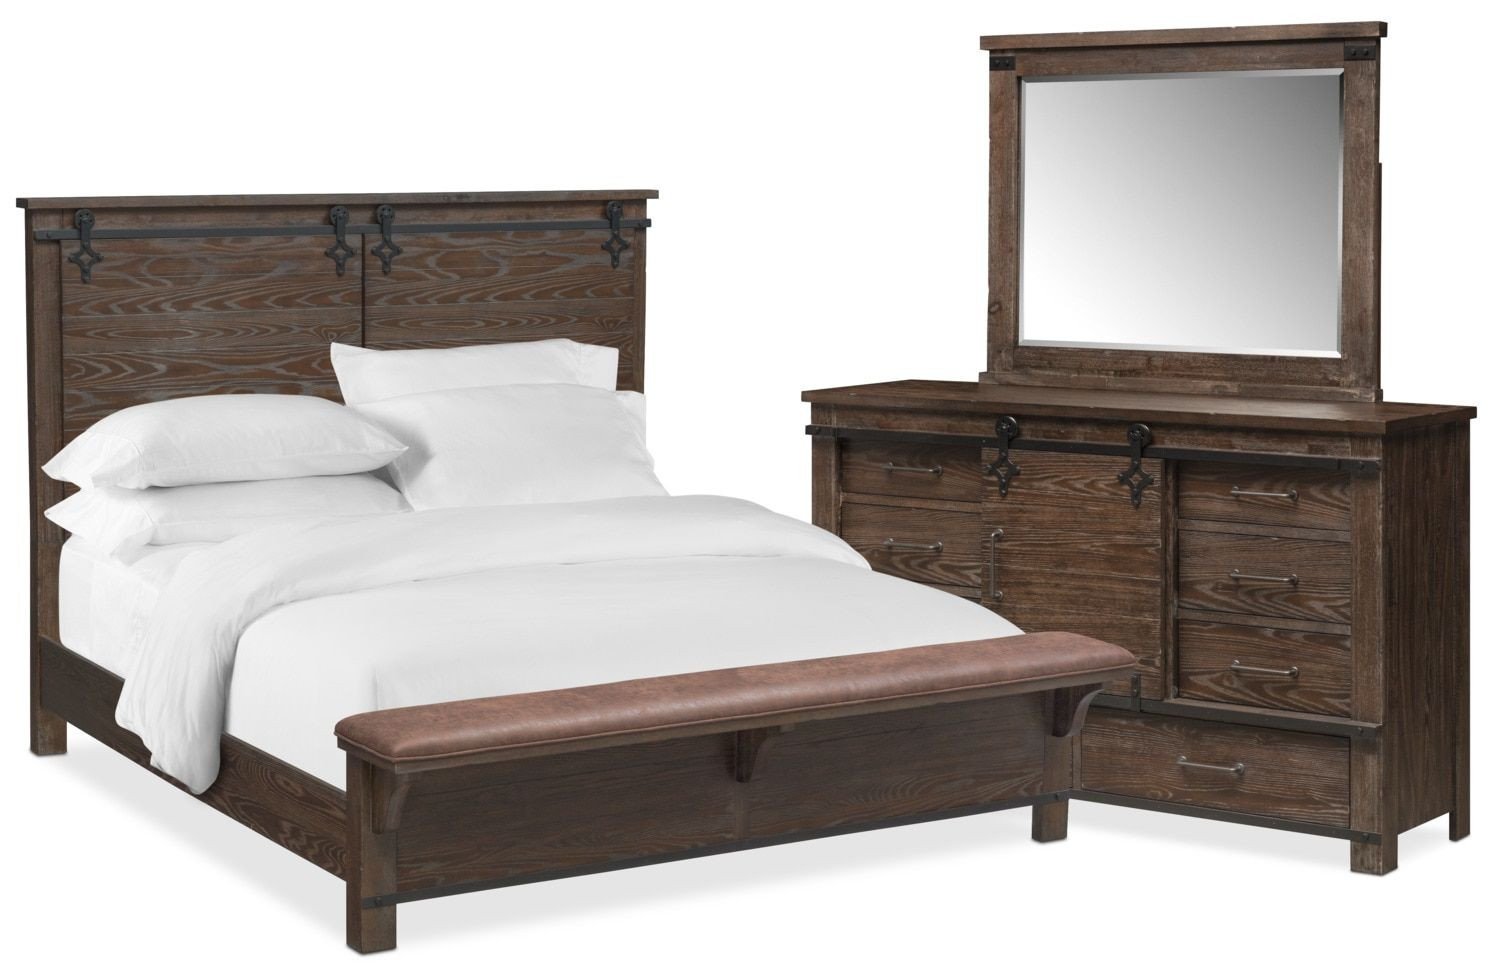 King Bedroom Set with Mattress Luxury Founders Mill 5 Piece Queen Bedroom Set Cocoa